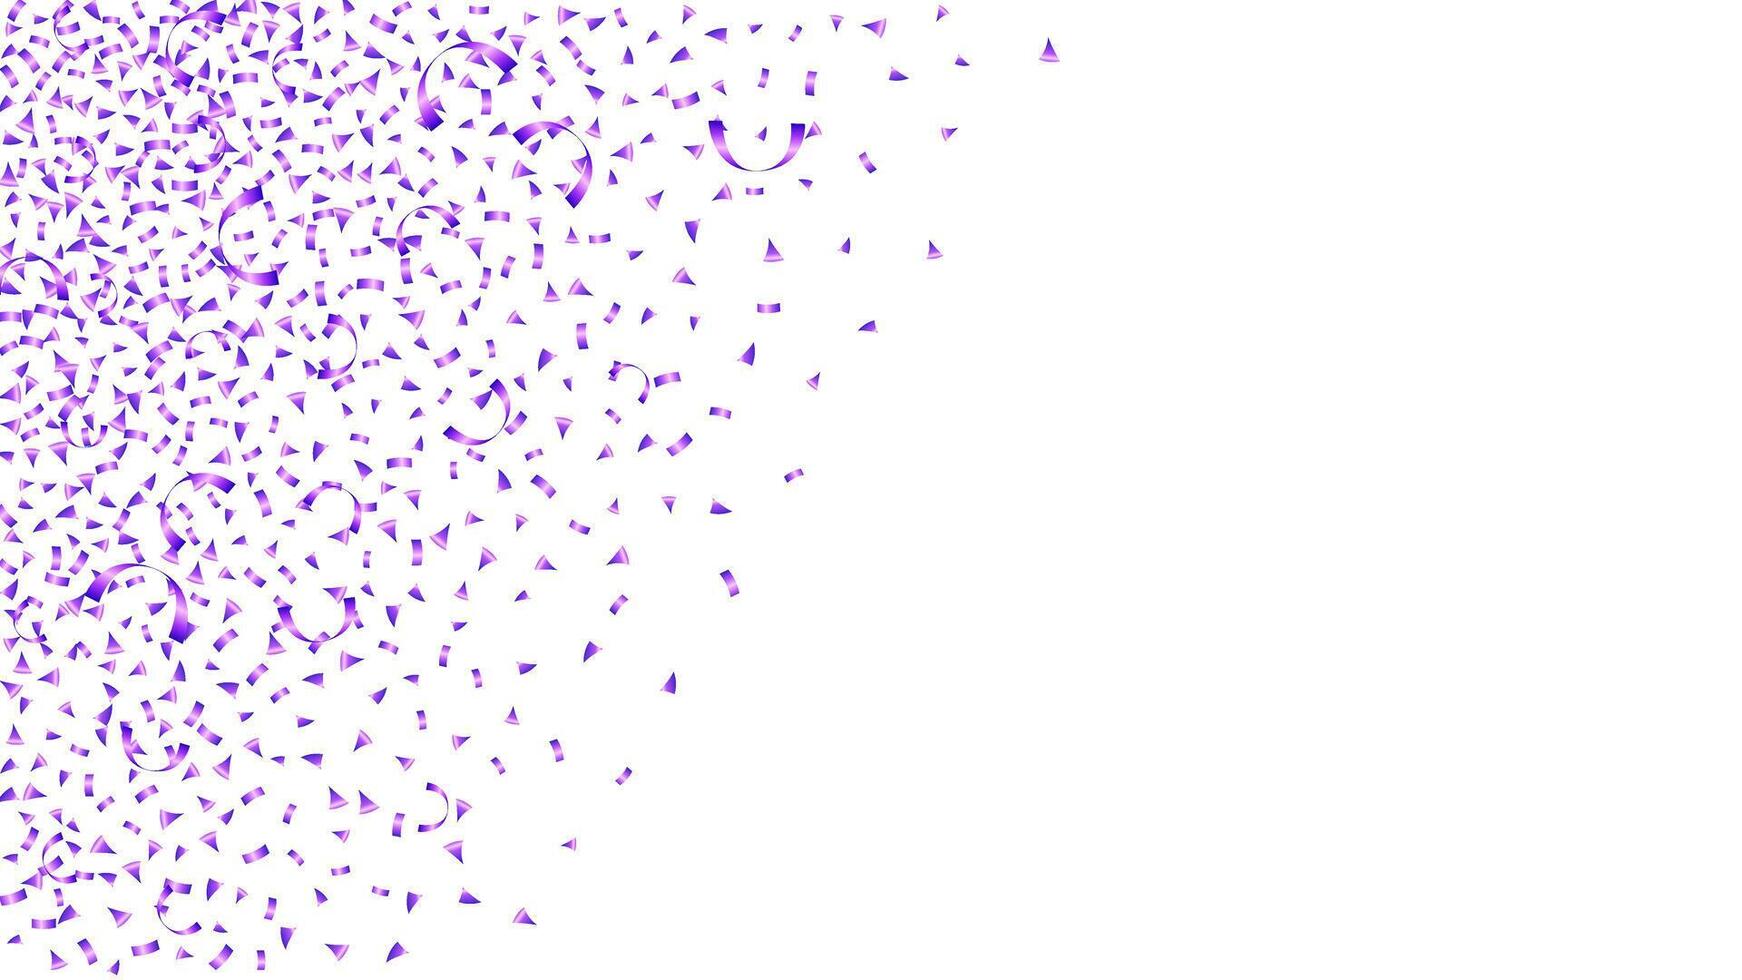 violet confettis décoration vacances de fête fête Contexte vecteur